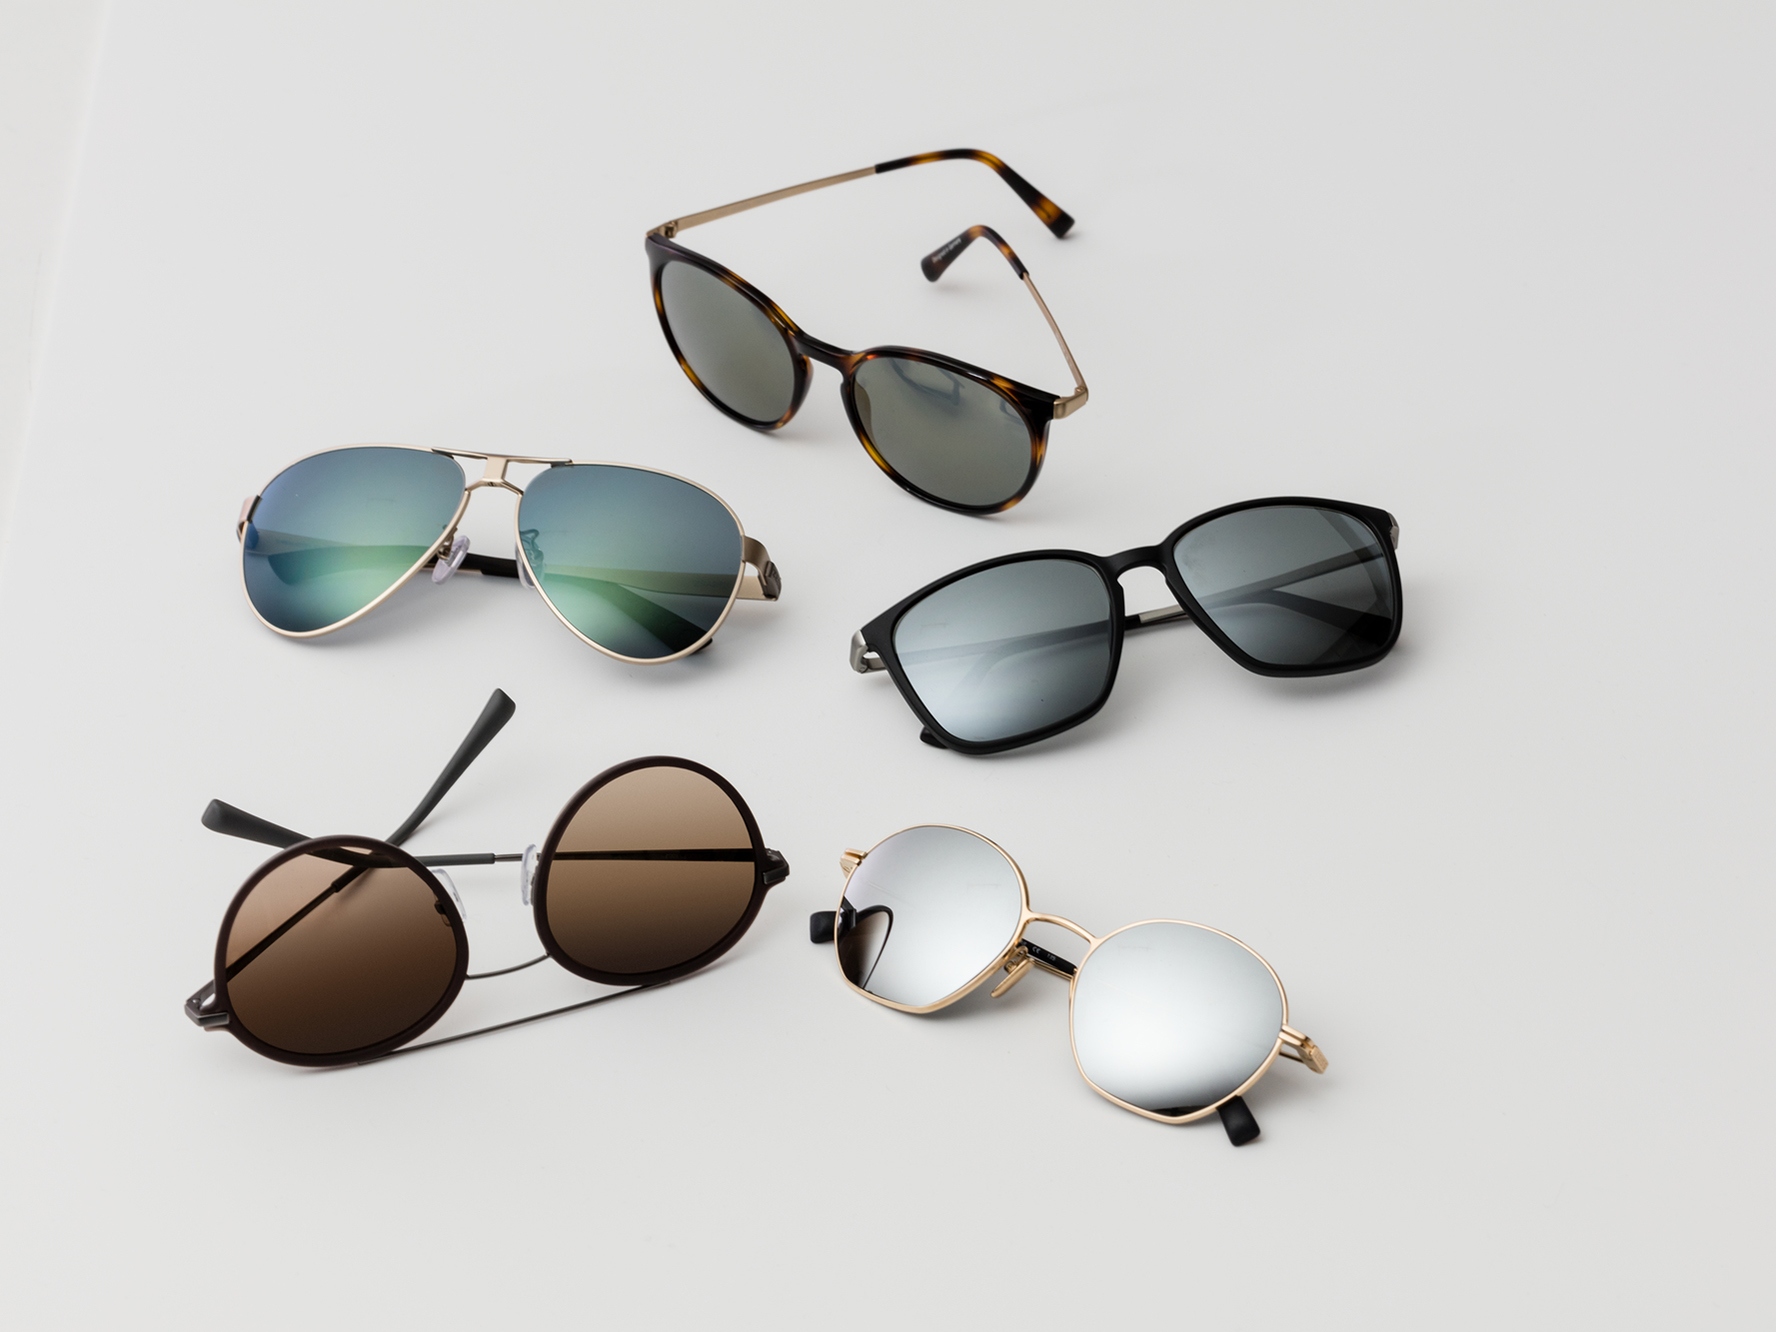 Fünf Sonnenbrillen in klassischen Tönungen für Sonnenschutzgläser und mittlere bis starke Lichtintensität.